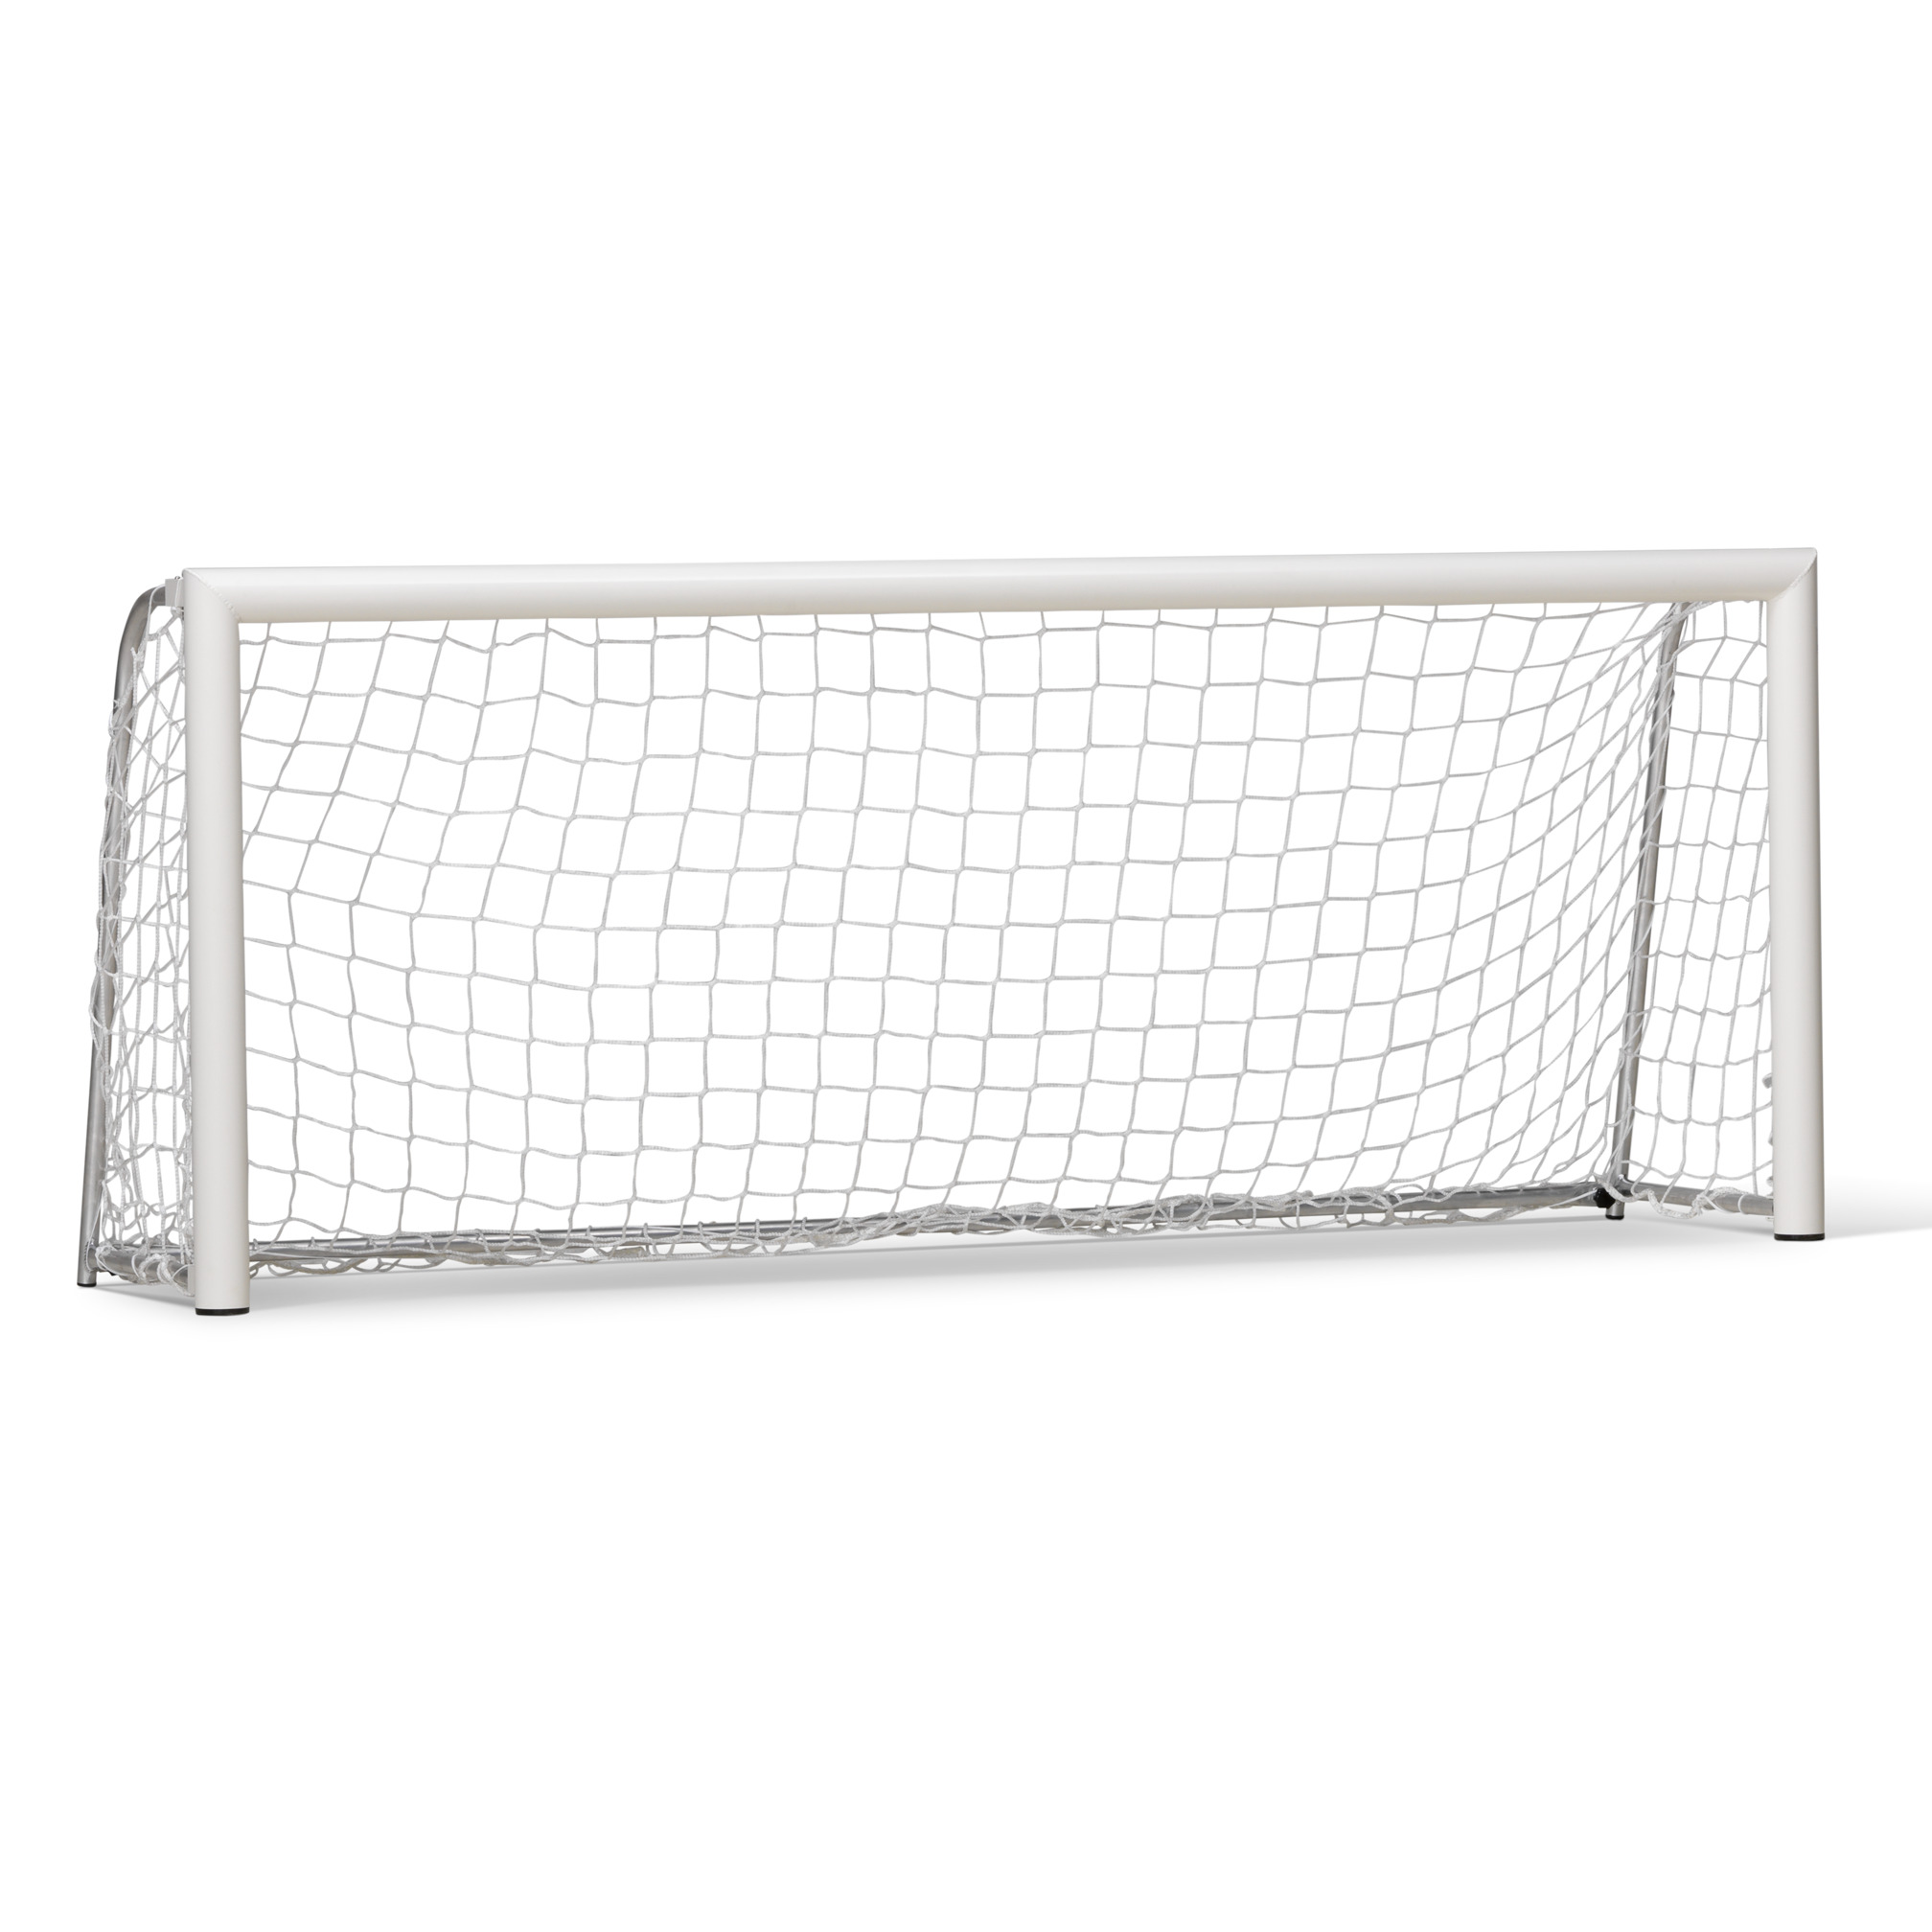 Mini football goal 250x100 cm aluminium, including net